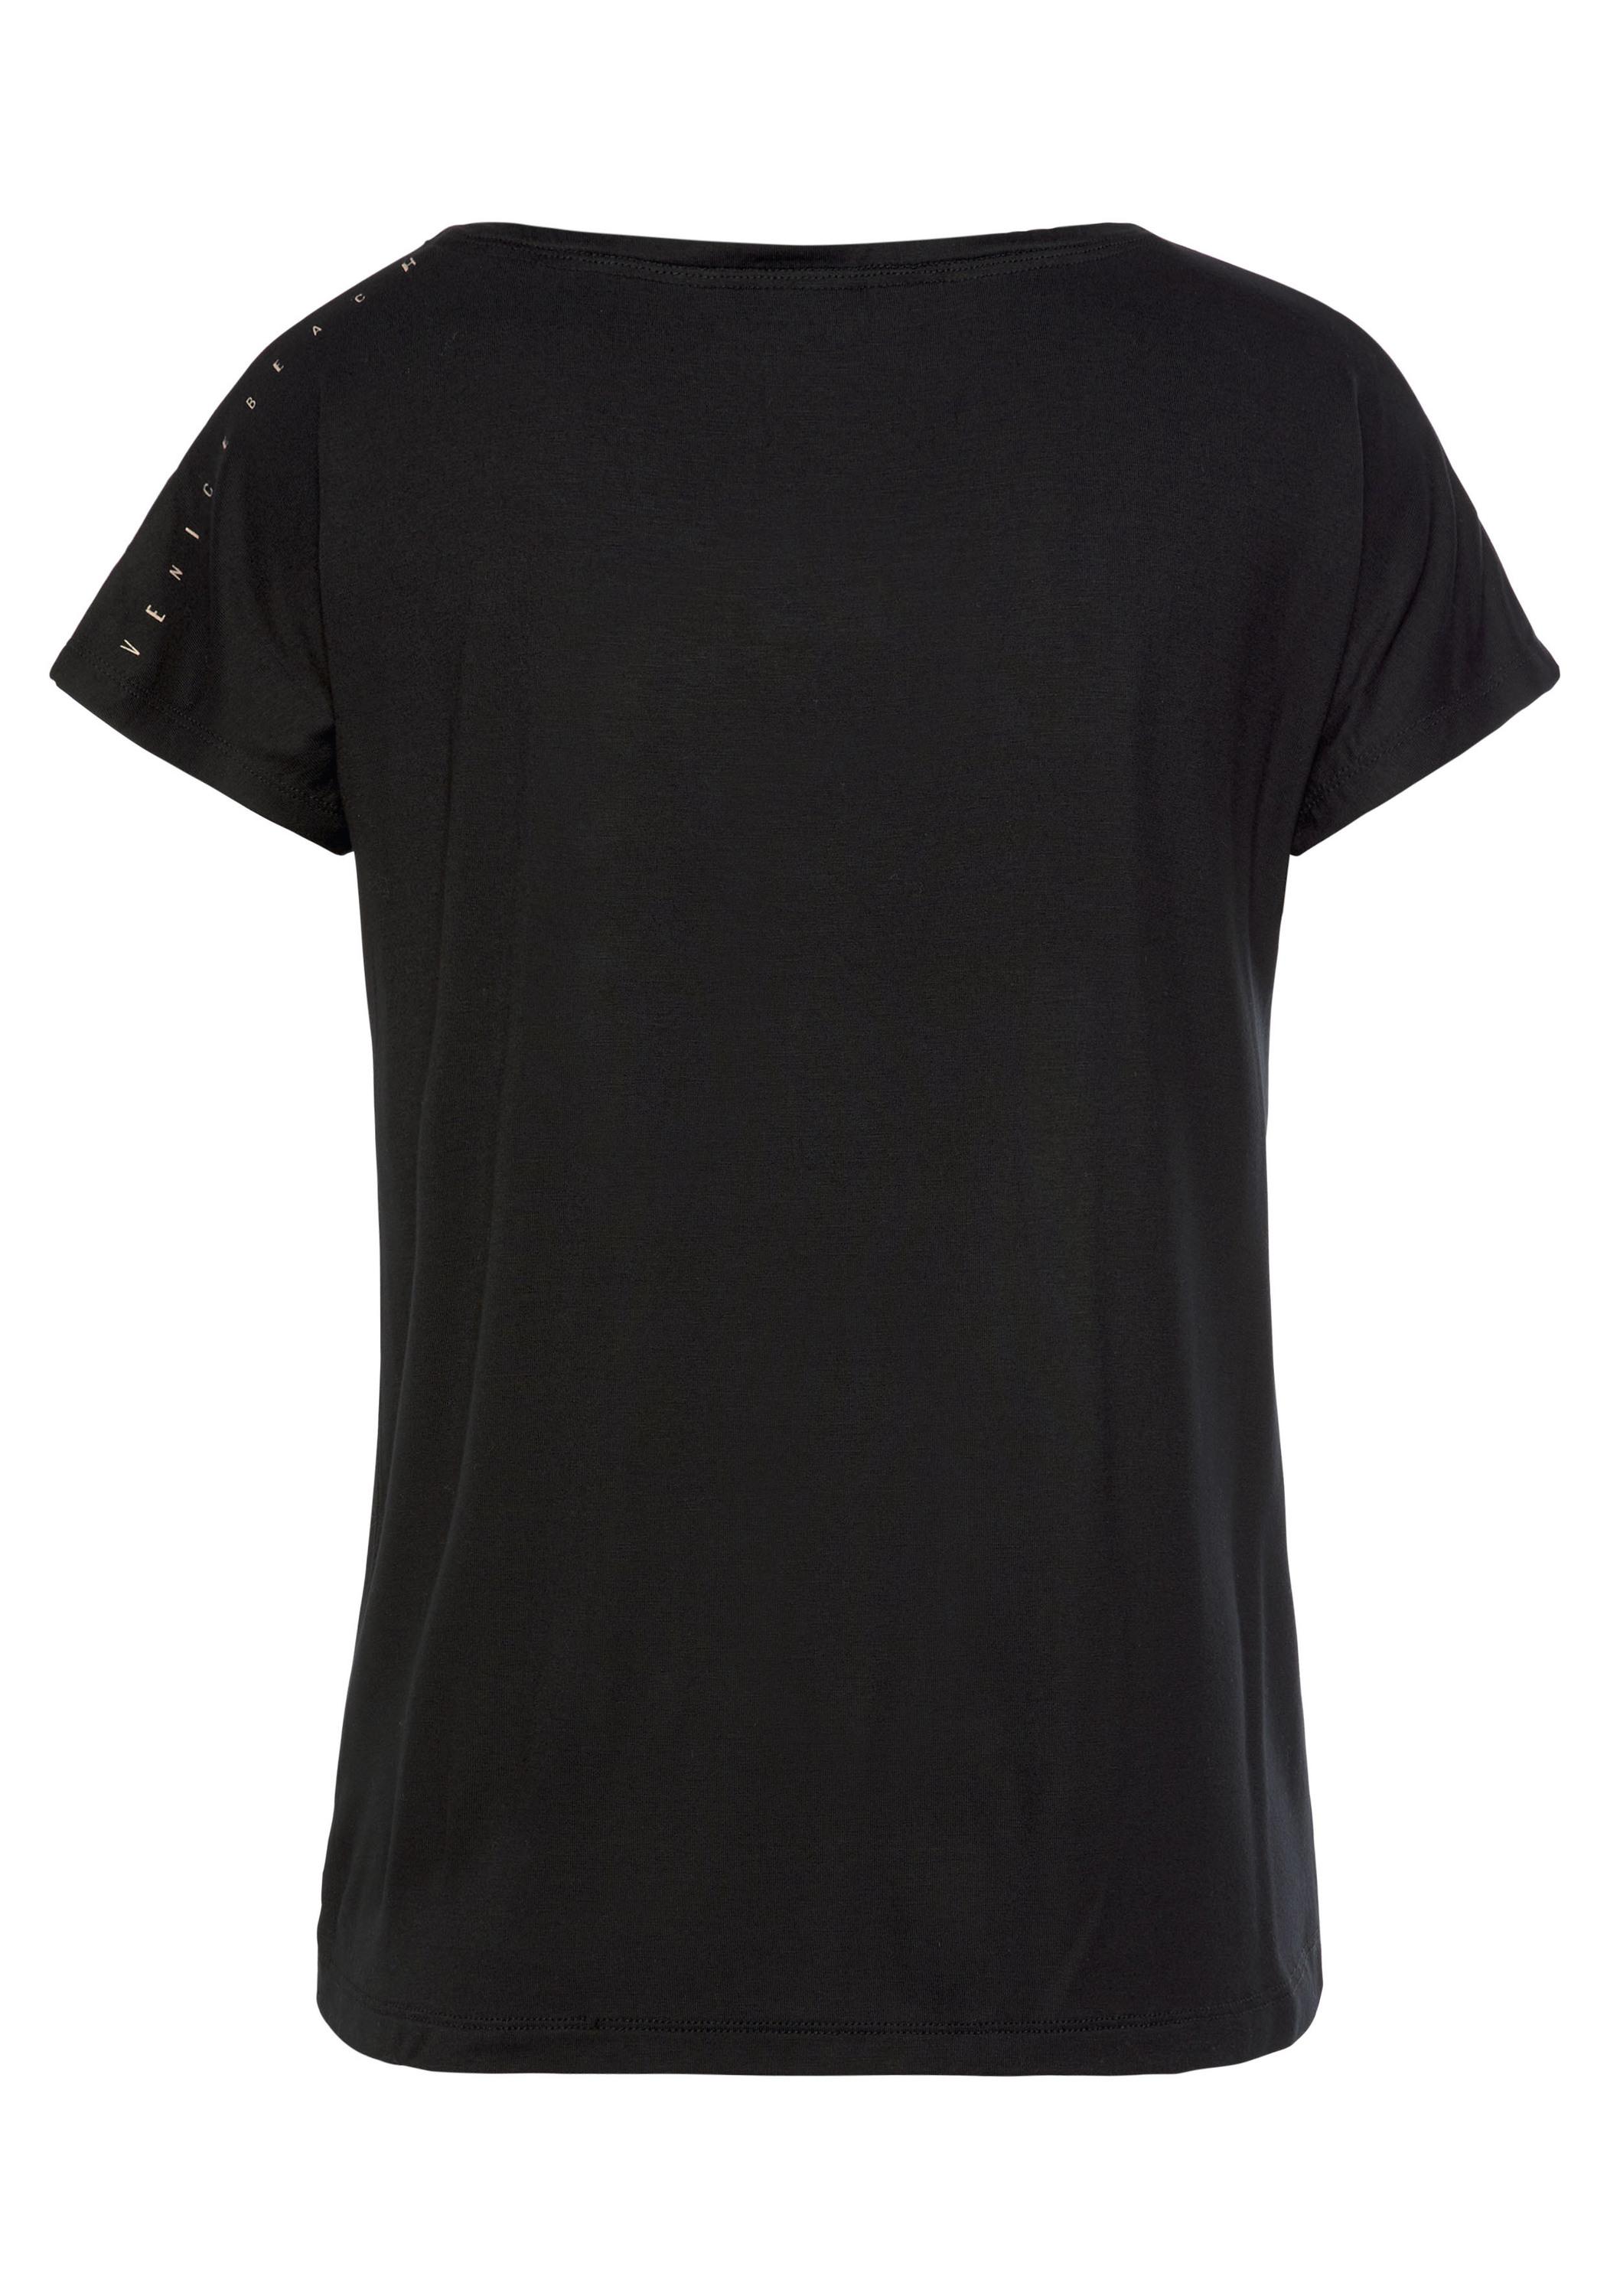 VENICE BEACH von kaufen schwarz SportScheck Damen Shop im Online T-Shirt